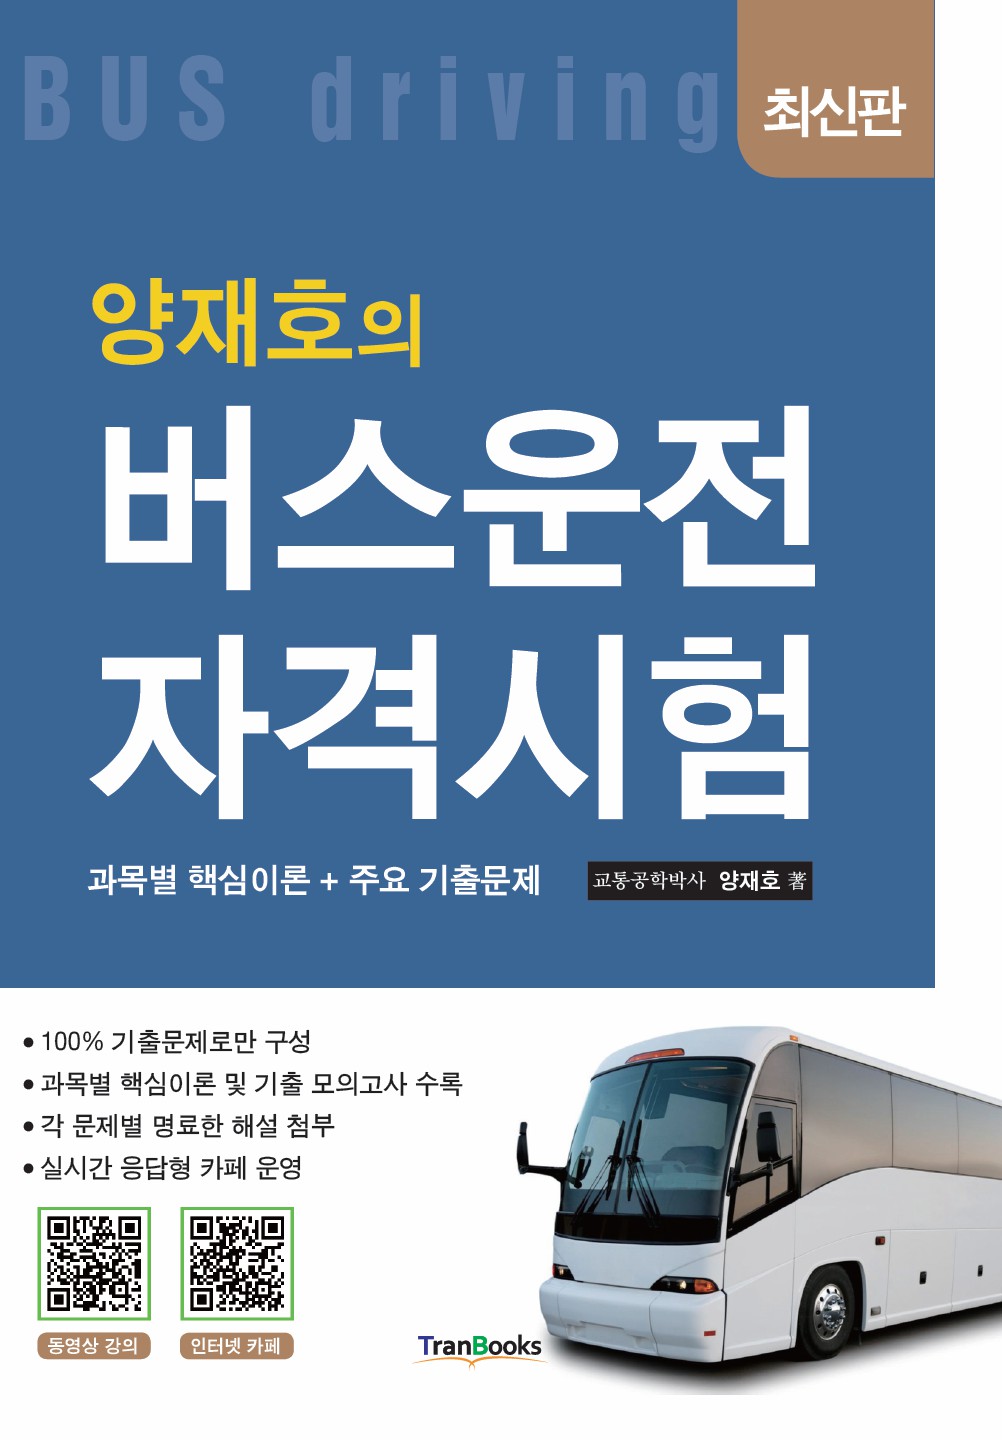 [패키지]버스운전자격시험(3일)